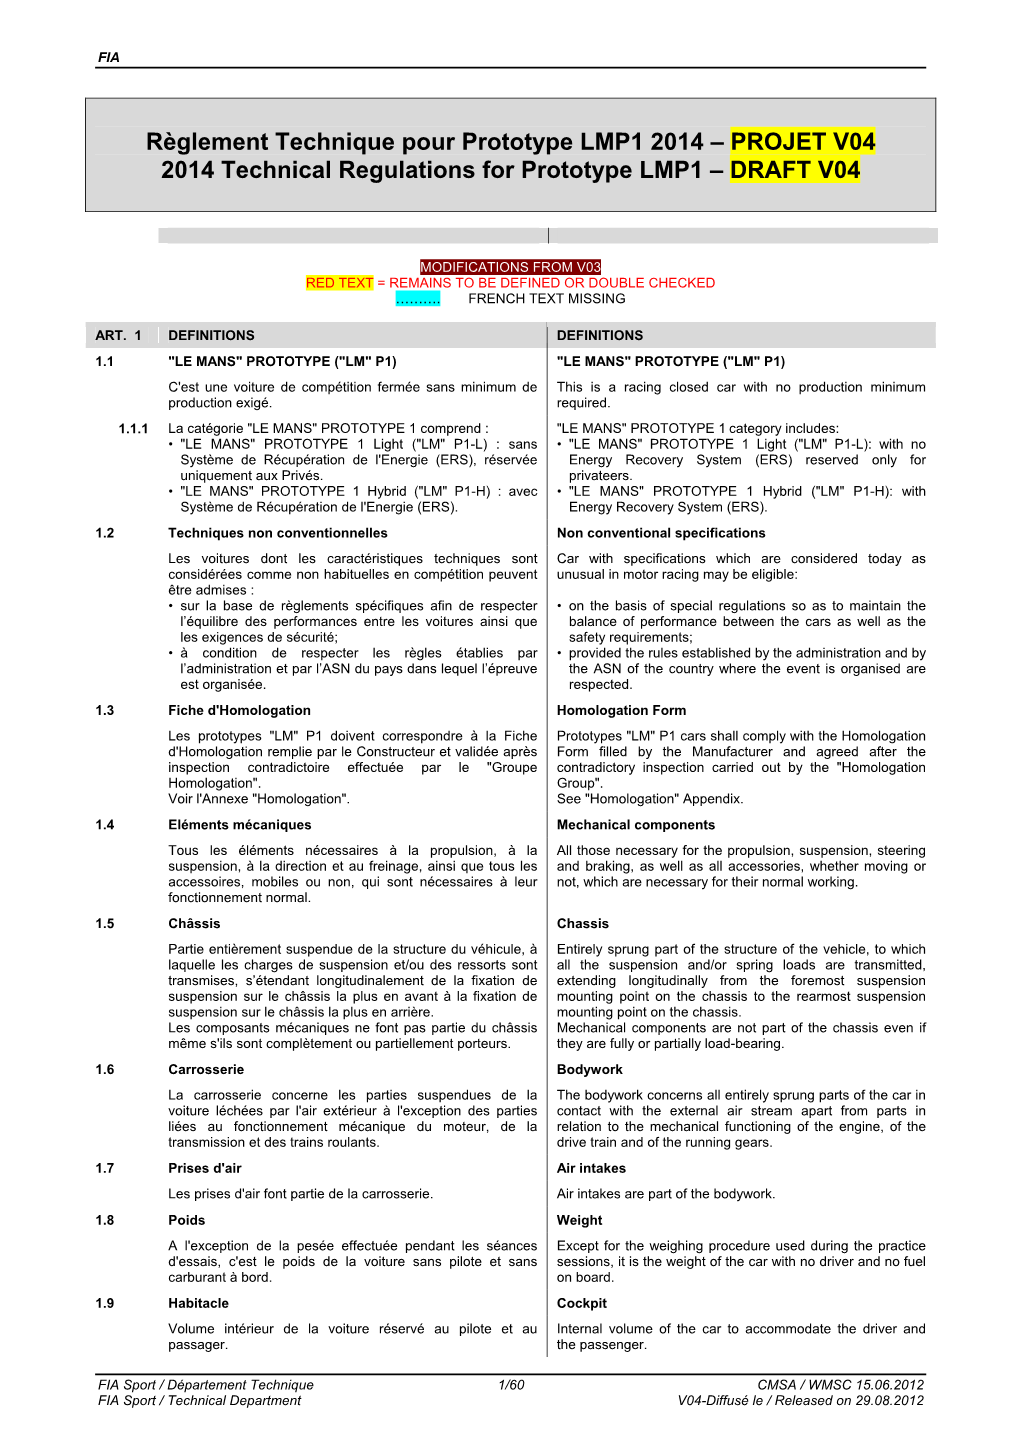 PROJET V04 2014 Technical Regulations for Prototype LMP1 – DRAFT V04